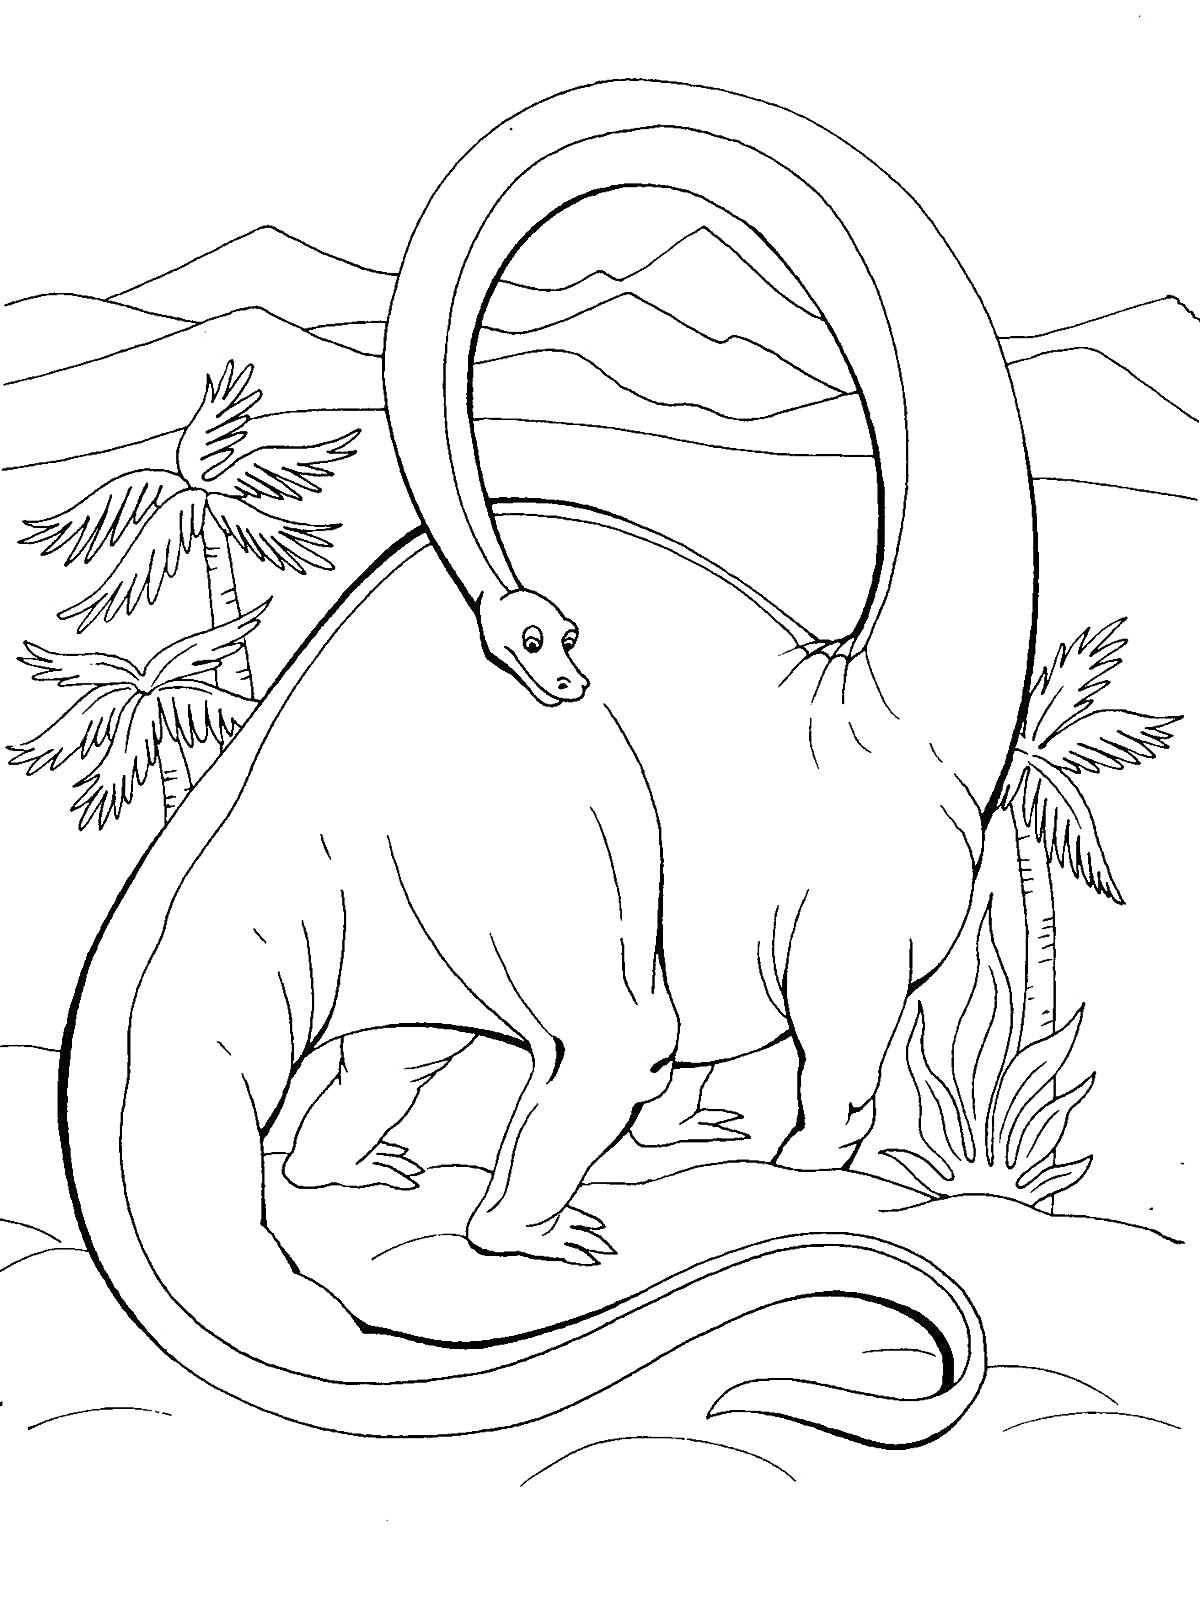 Раскраска Динозавр с длинной шеей на фоне гор и деревьев